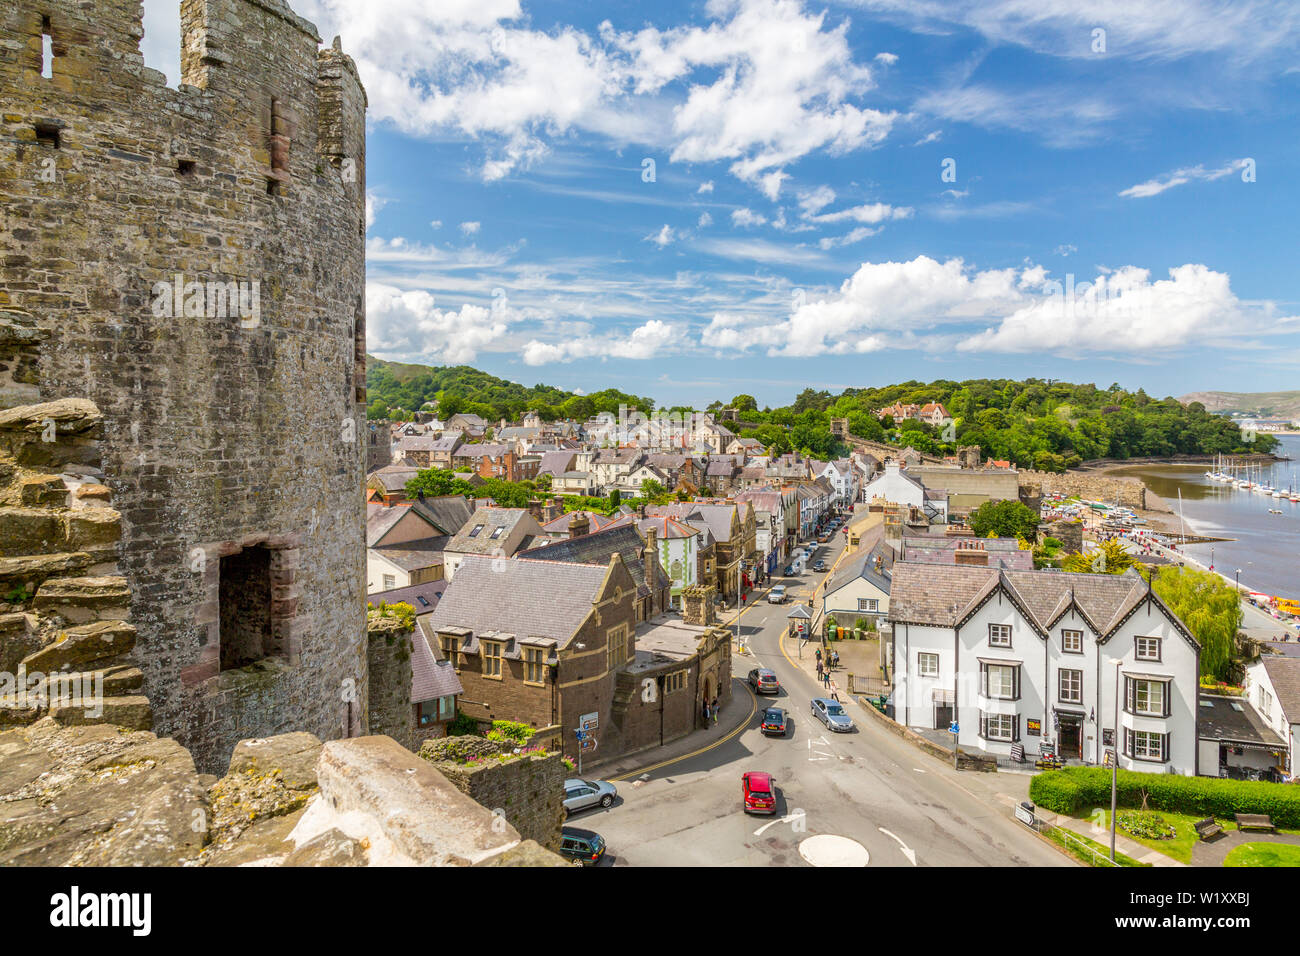 La ville de Conwy et la rivière Conwy vu de ruines de Château de Conwy, maintenant une attraction touristique populaire, Pays de Galles, Royaume-Uni Banque D'Images